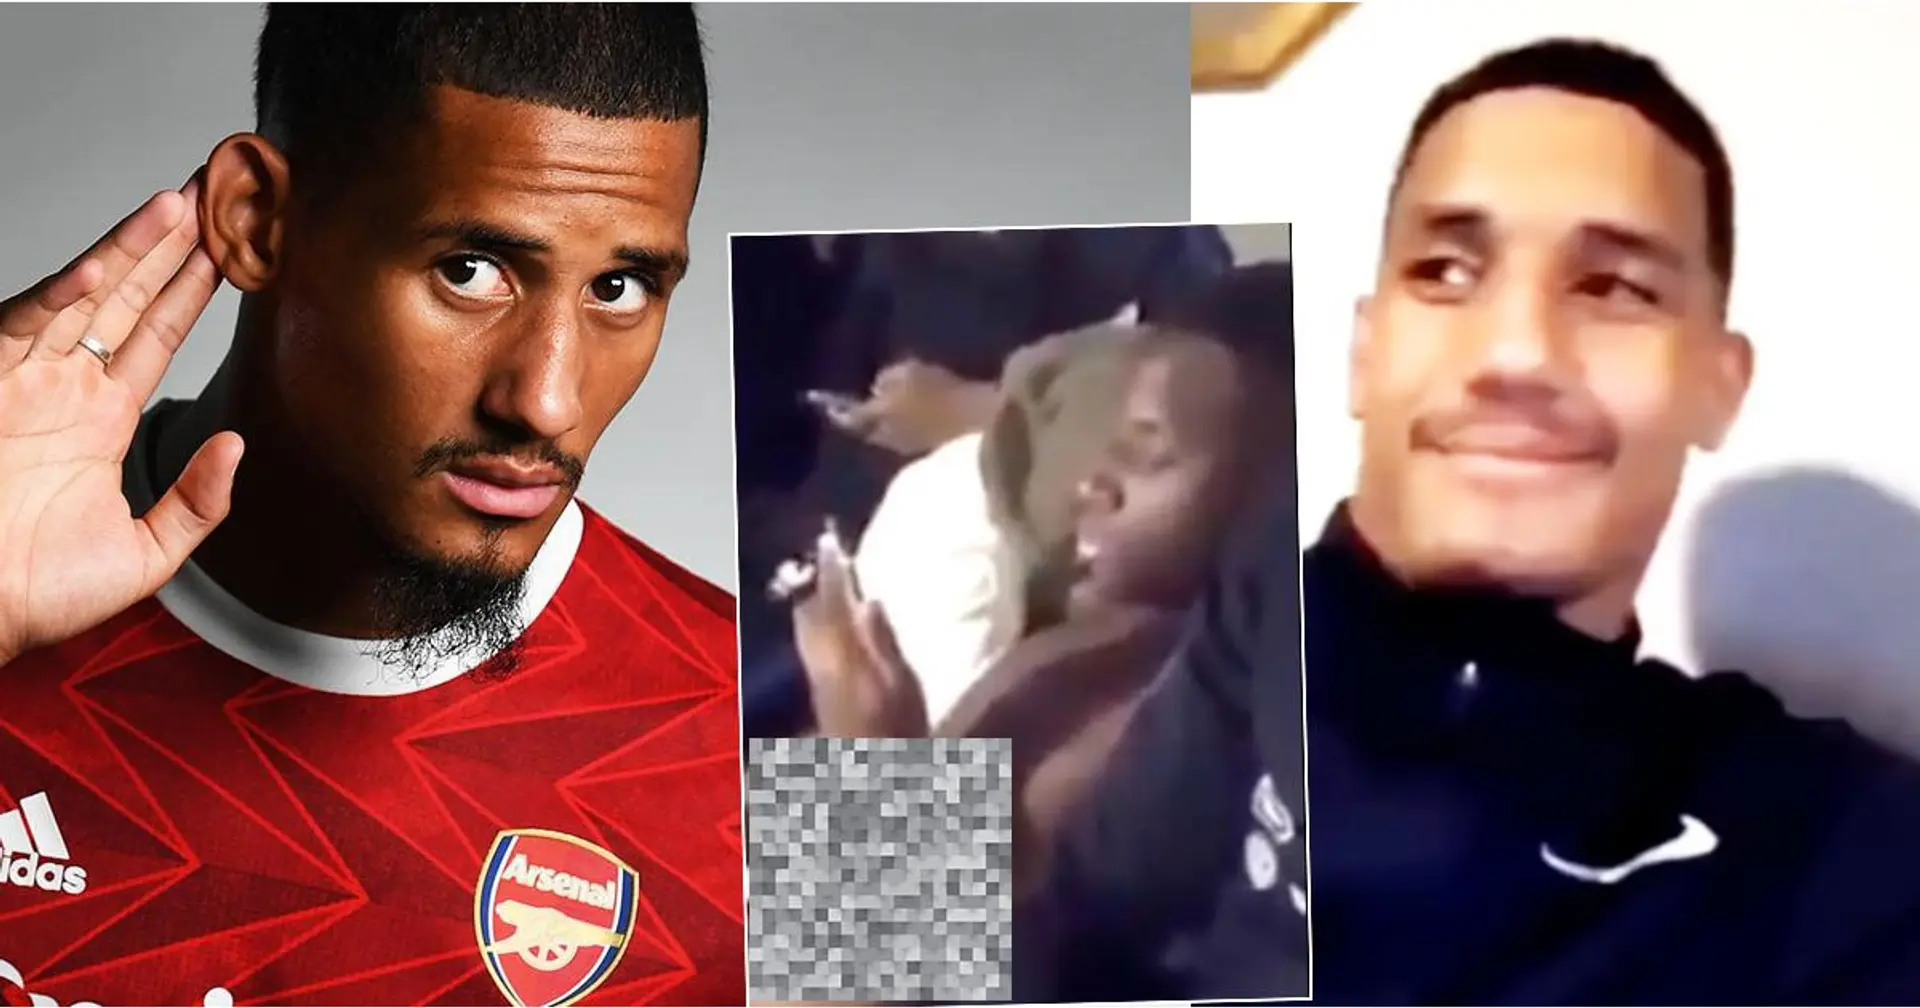 Saliba dell' Arsenal filma un suo compagno di squadra in Francia masturbarsi in pubblico, 3 anni dopo video diventa virale